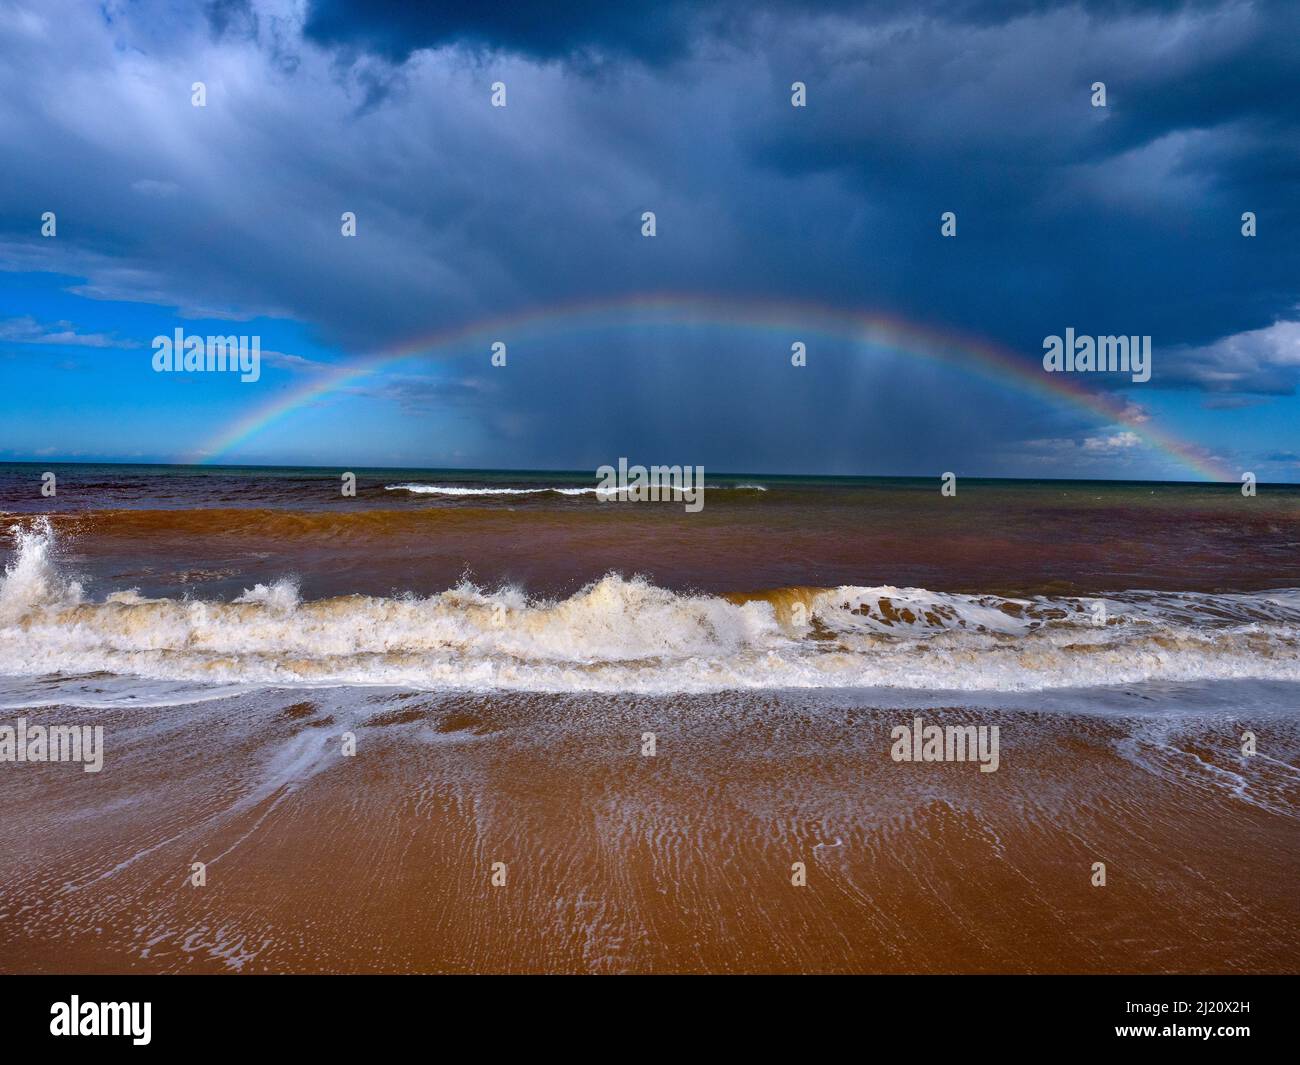 Mareas altas de otoño con cielos tormentosos y arco iris sobre el mar, Walcott, Norfolk, Inglaterra, Reino Unido, Septiembre. Foto de stock